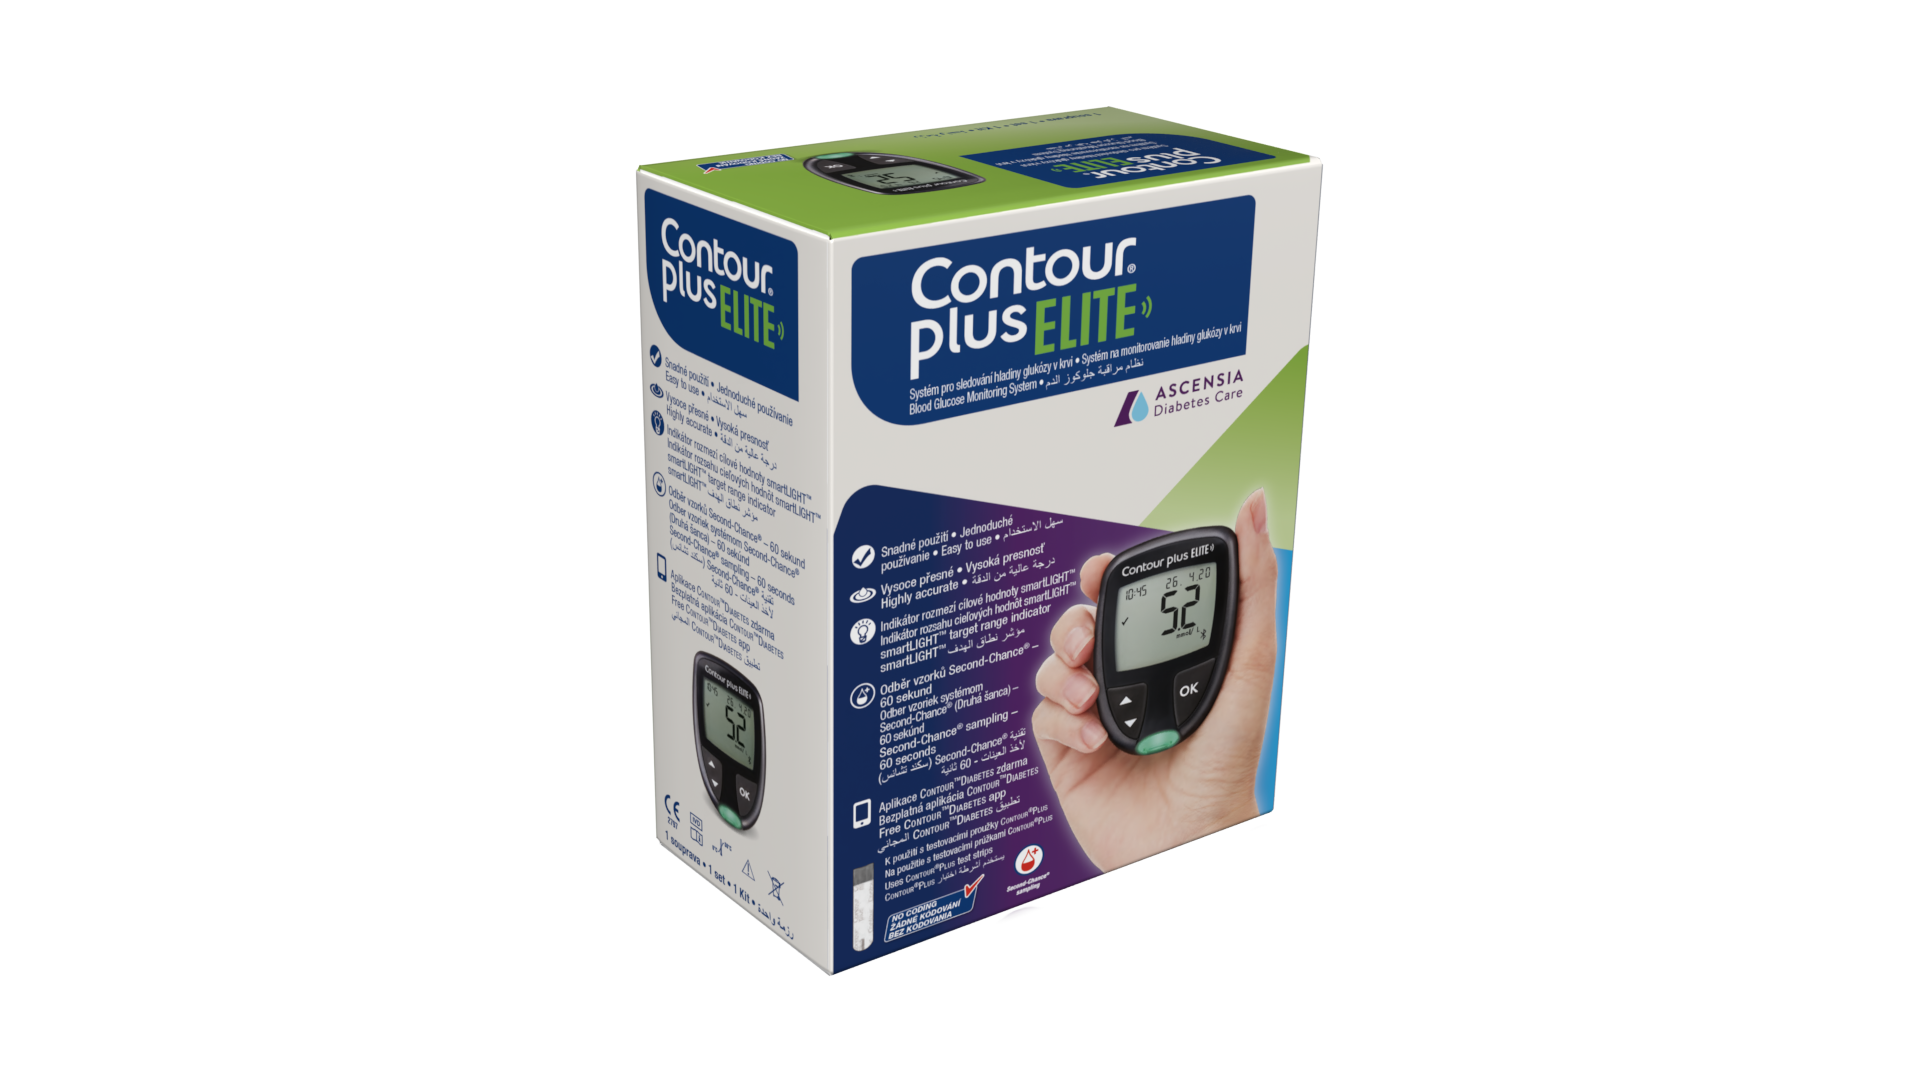 Contour Plus Strips 50's - Pharmaco